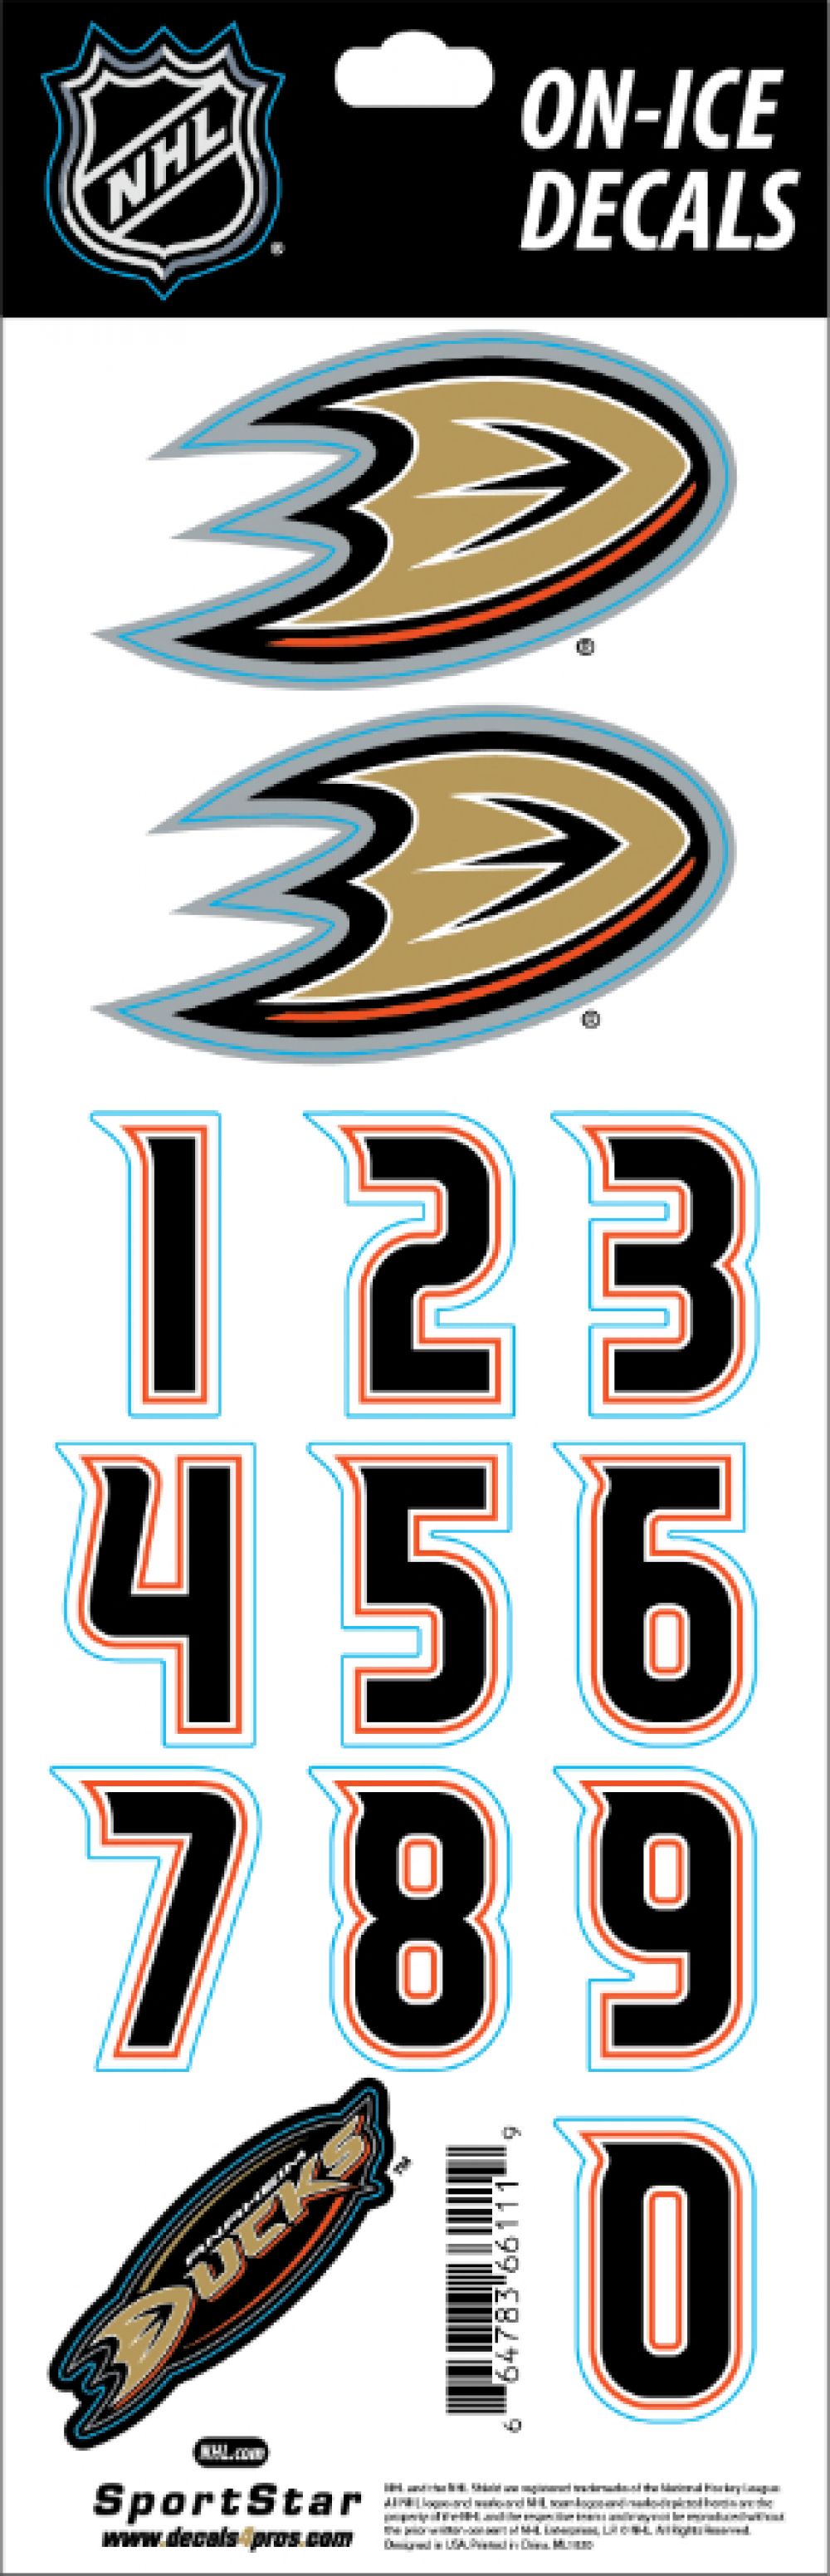 Anaheim Ducks Sticker / Decal